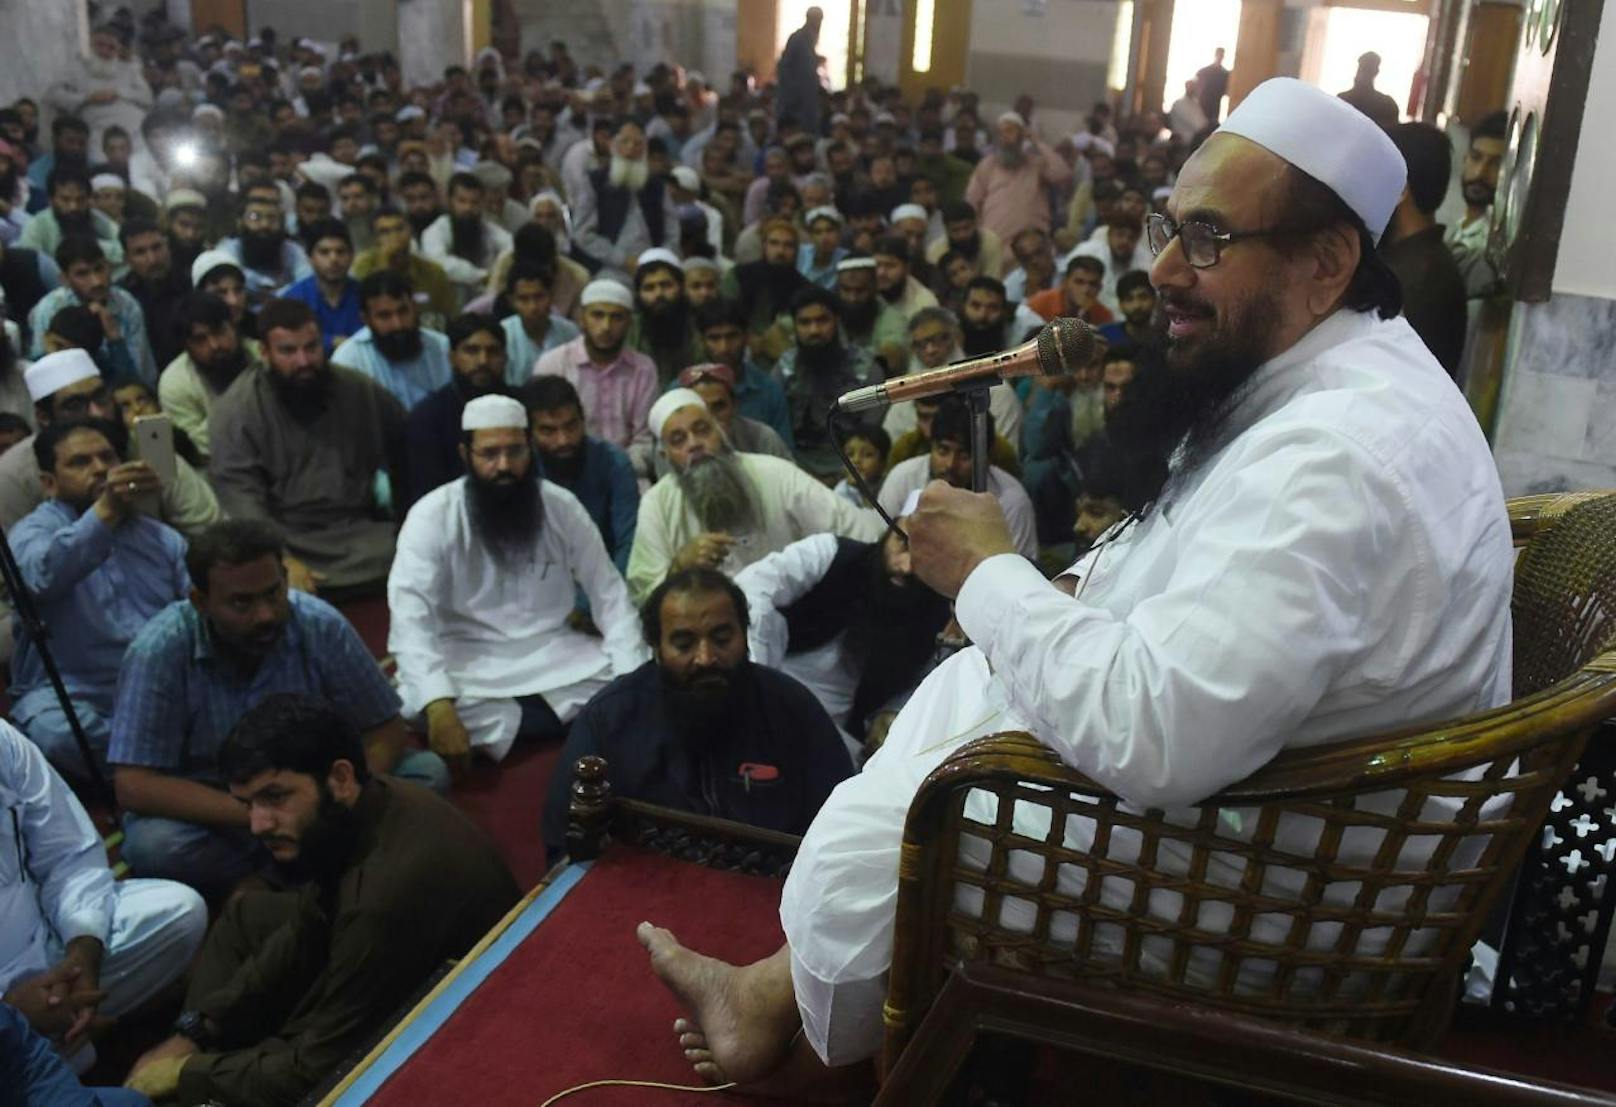 Anhänger der radikalen islamistischen Partei Tehreek-e-Labaik Pakistan (TLP) demonstrieren gegen den Freispruch einer Christin, die wegen Gotteslästerung in der Todeszelle saß.